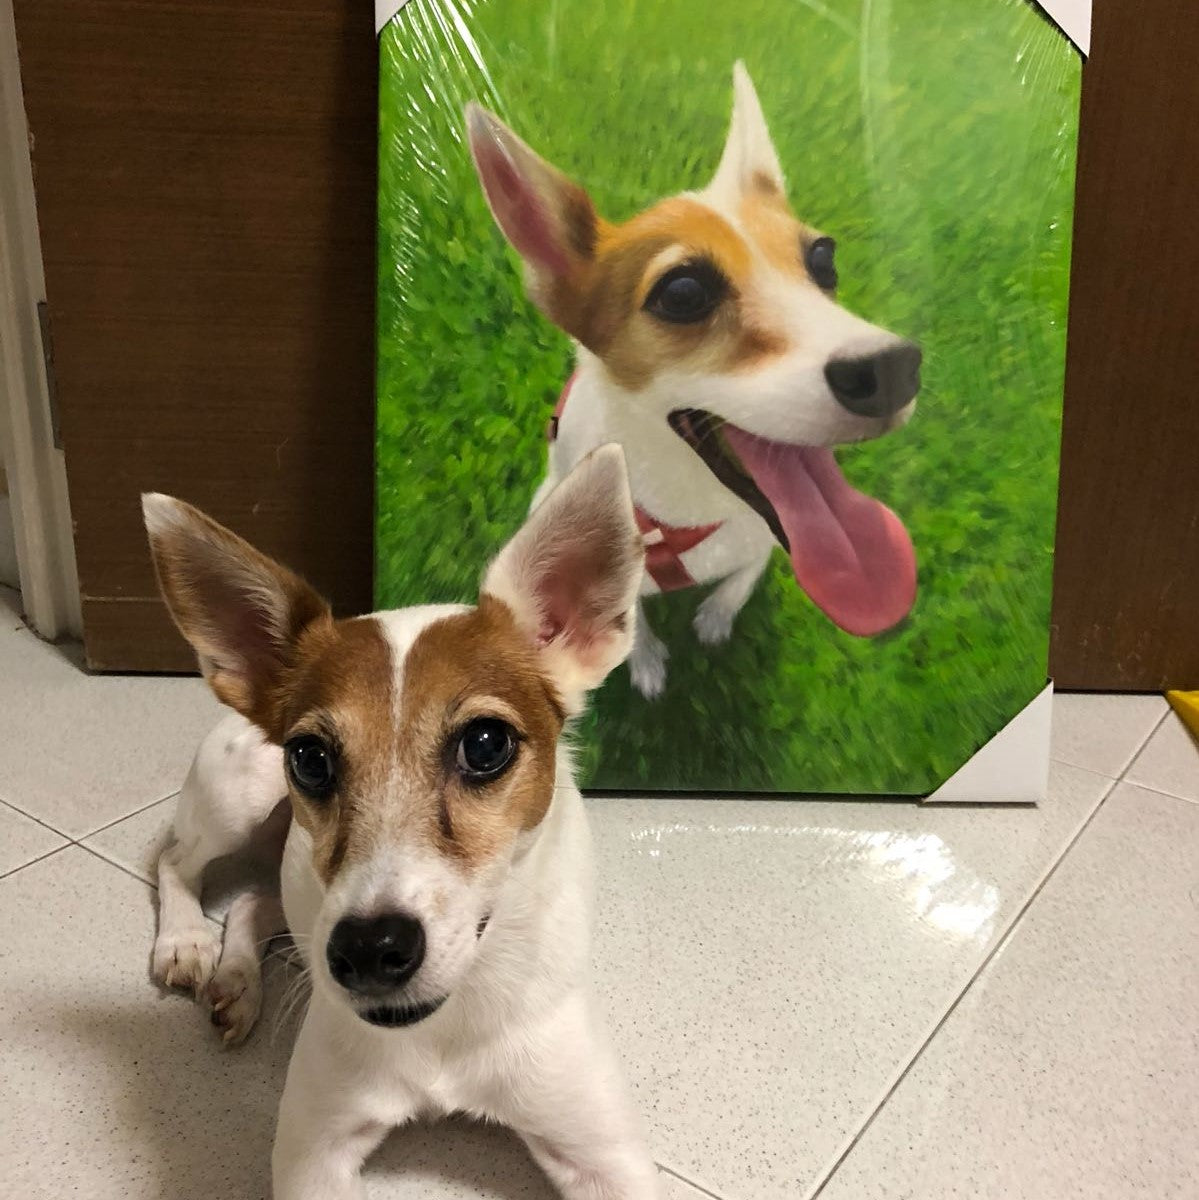 客製寵物肖像油畫